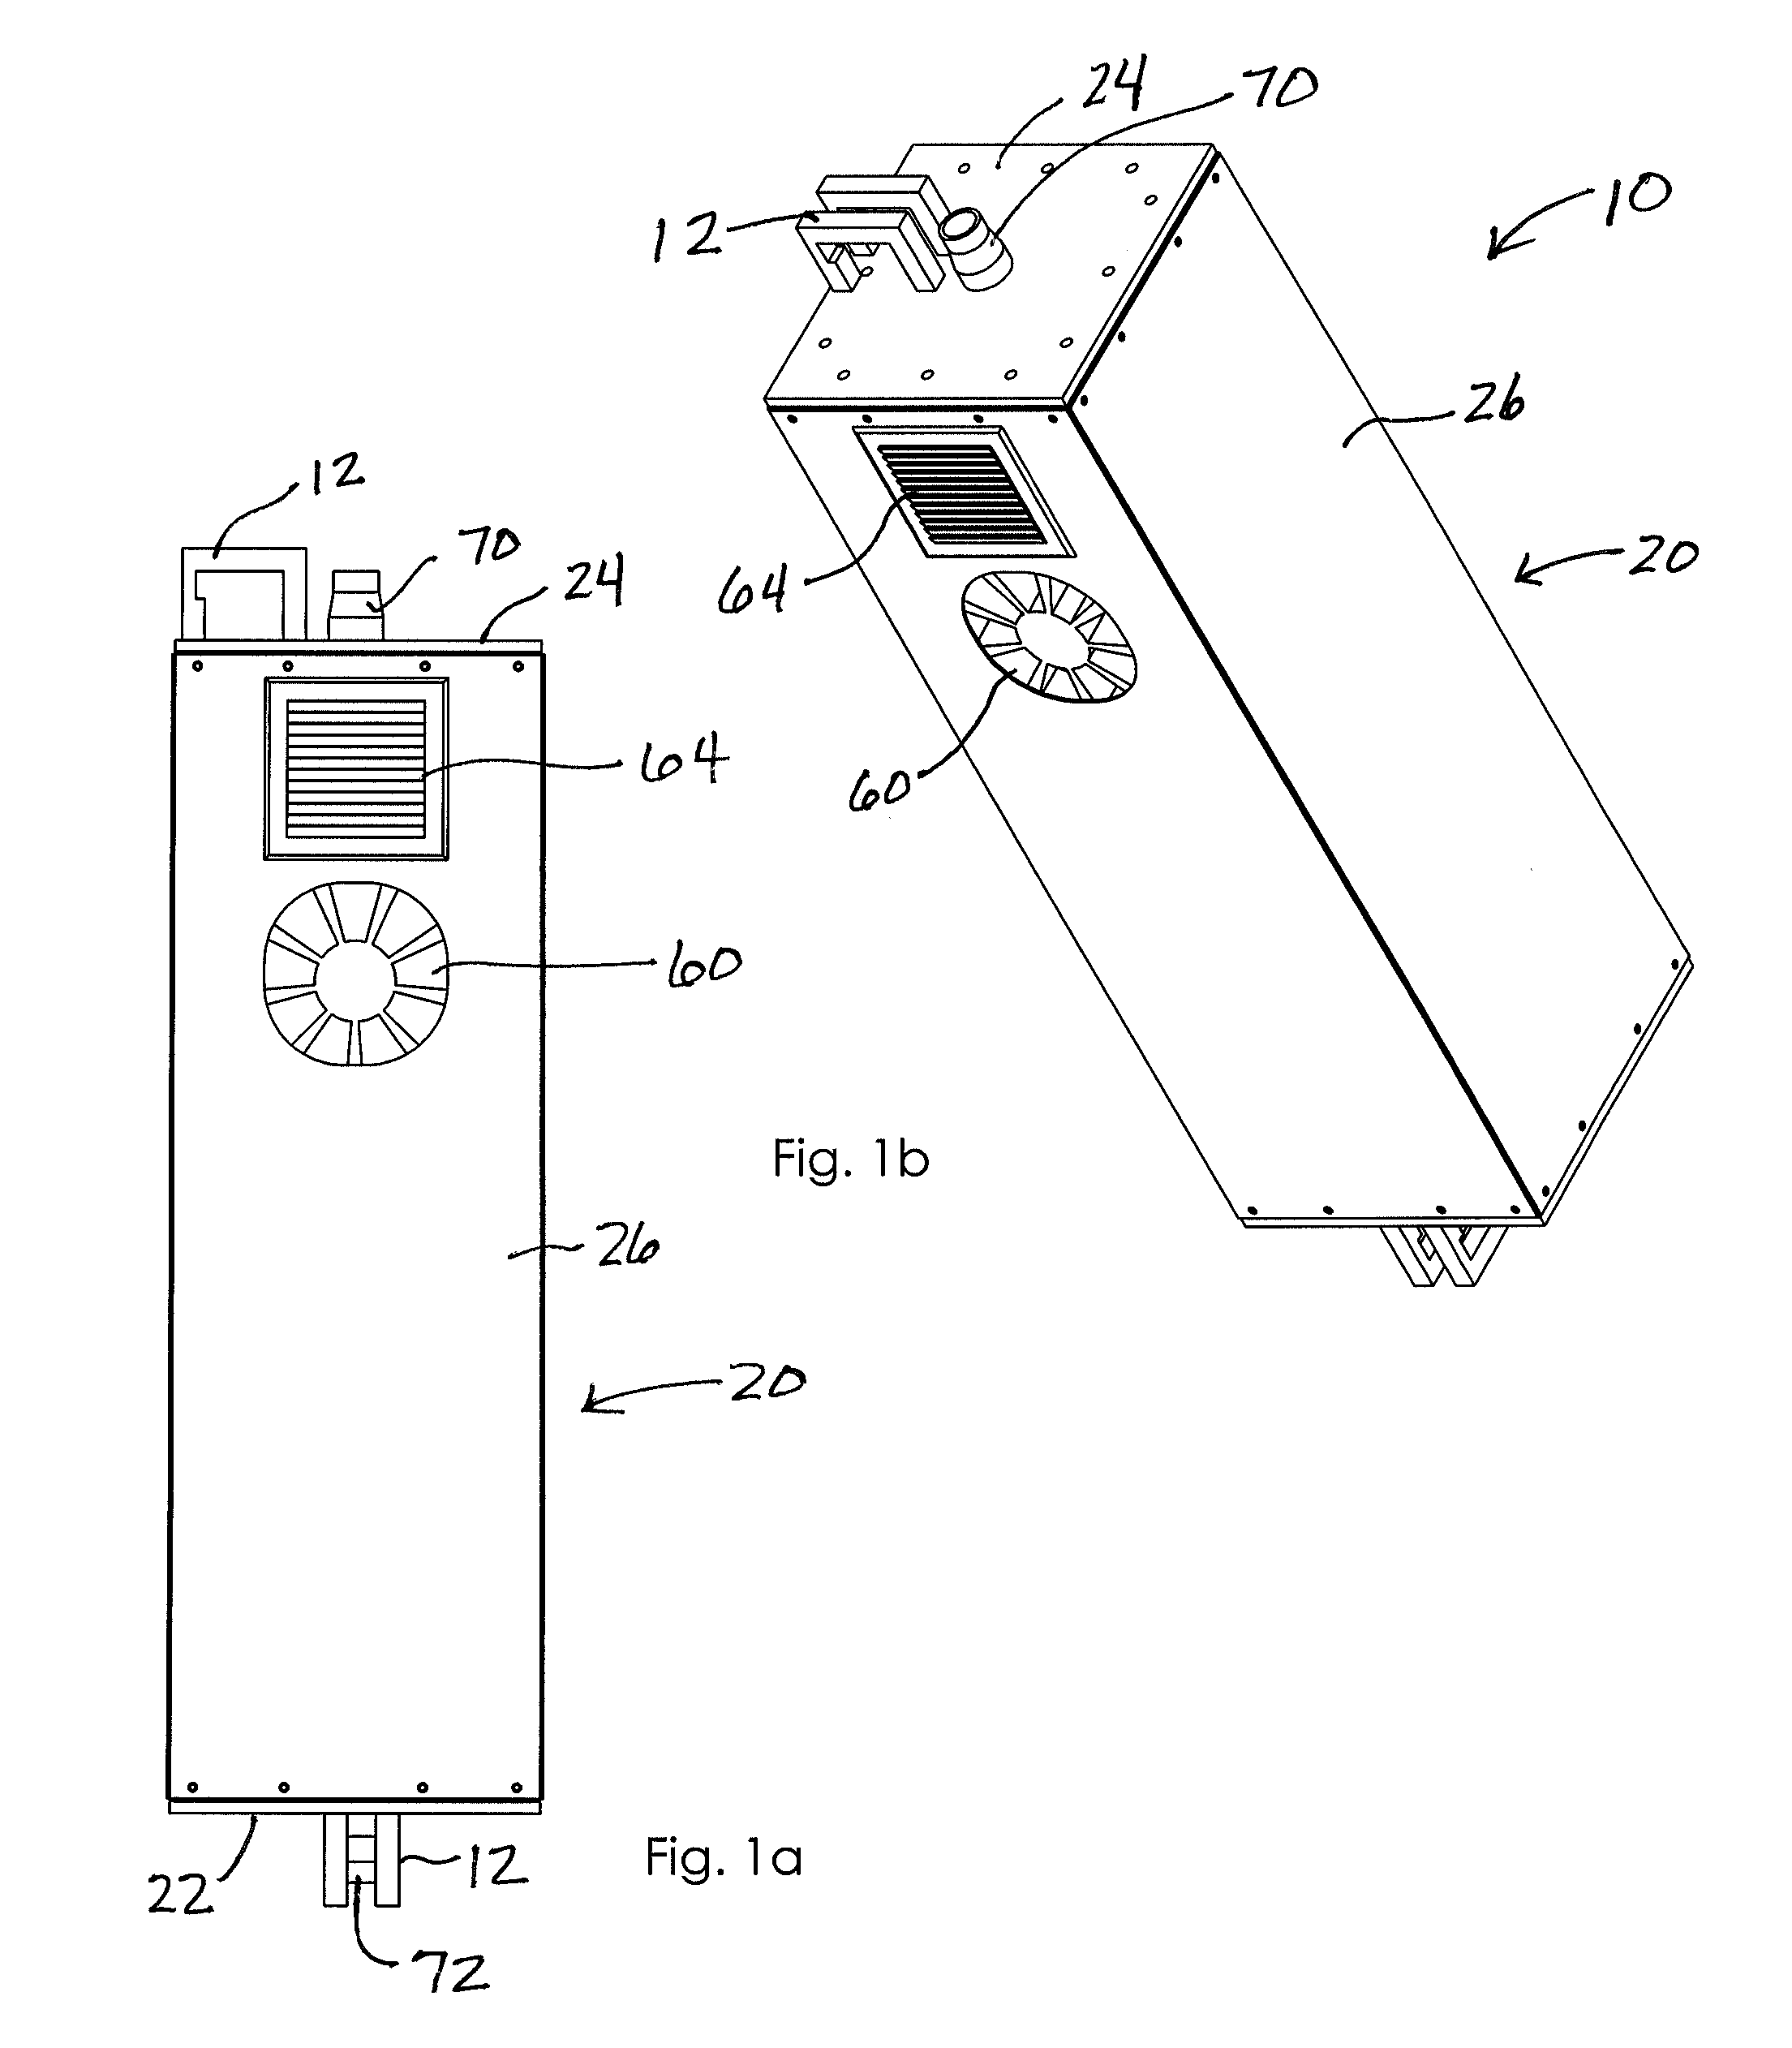 Ultraviolate light sterilization apparatus